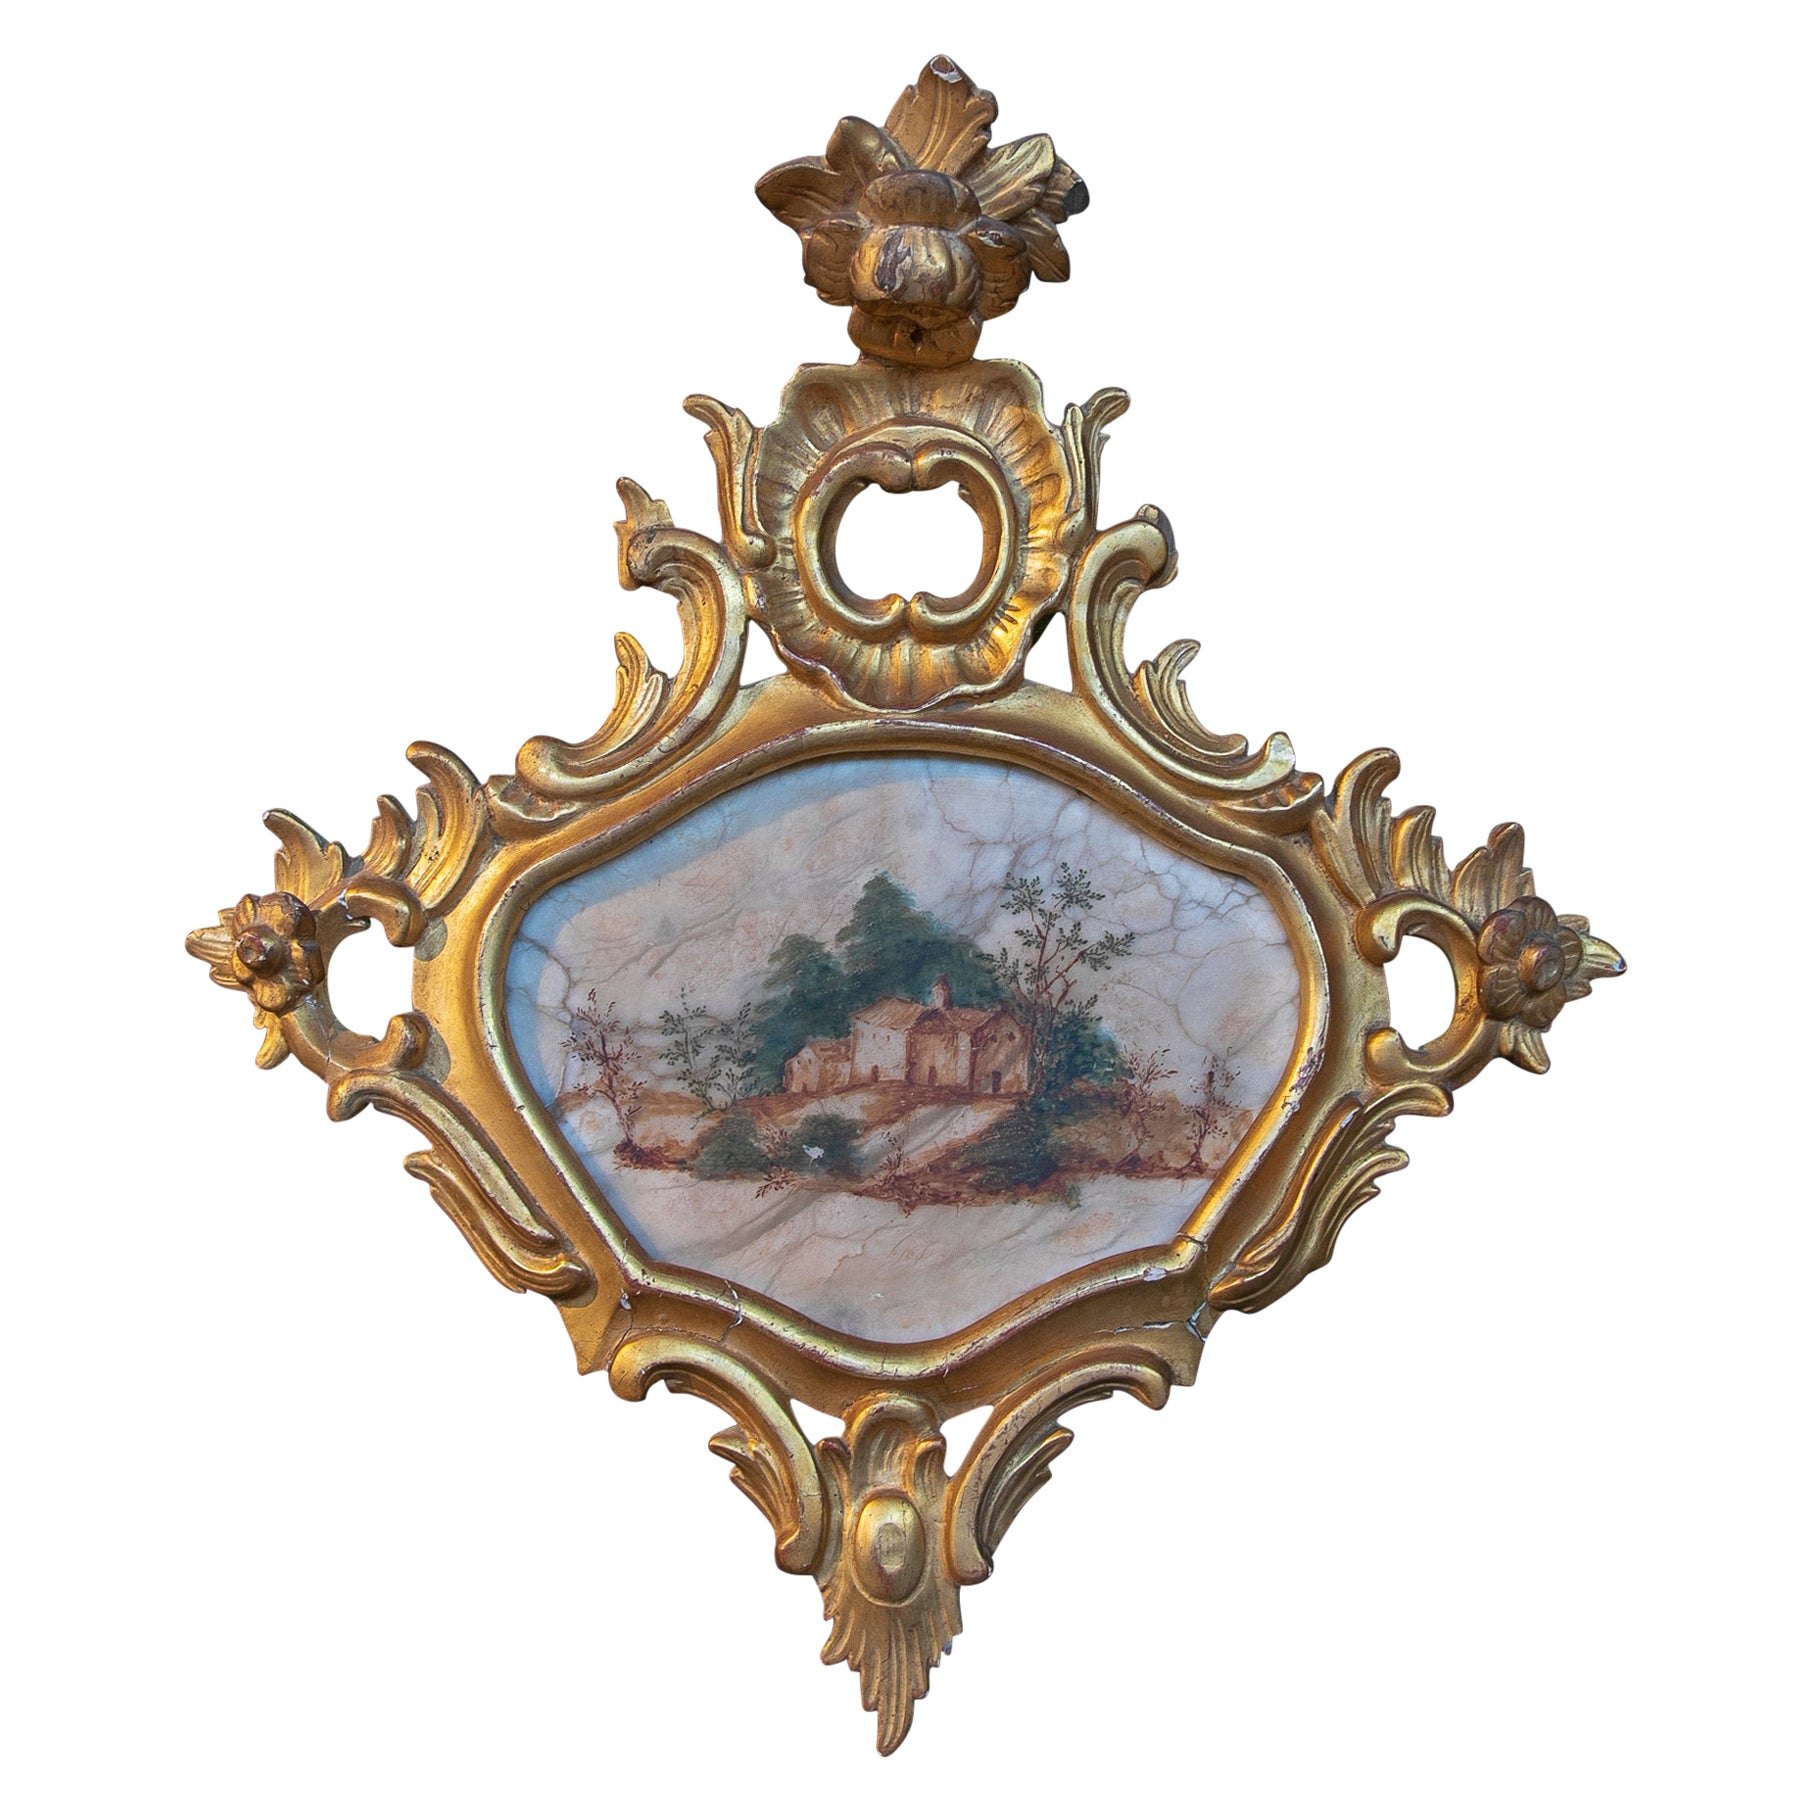 Peinture de paysage italienne du 18ème siècle peinte à la main sur albâtre et encadrée